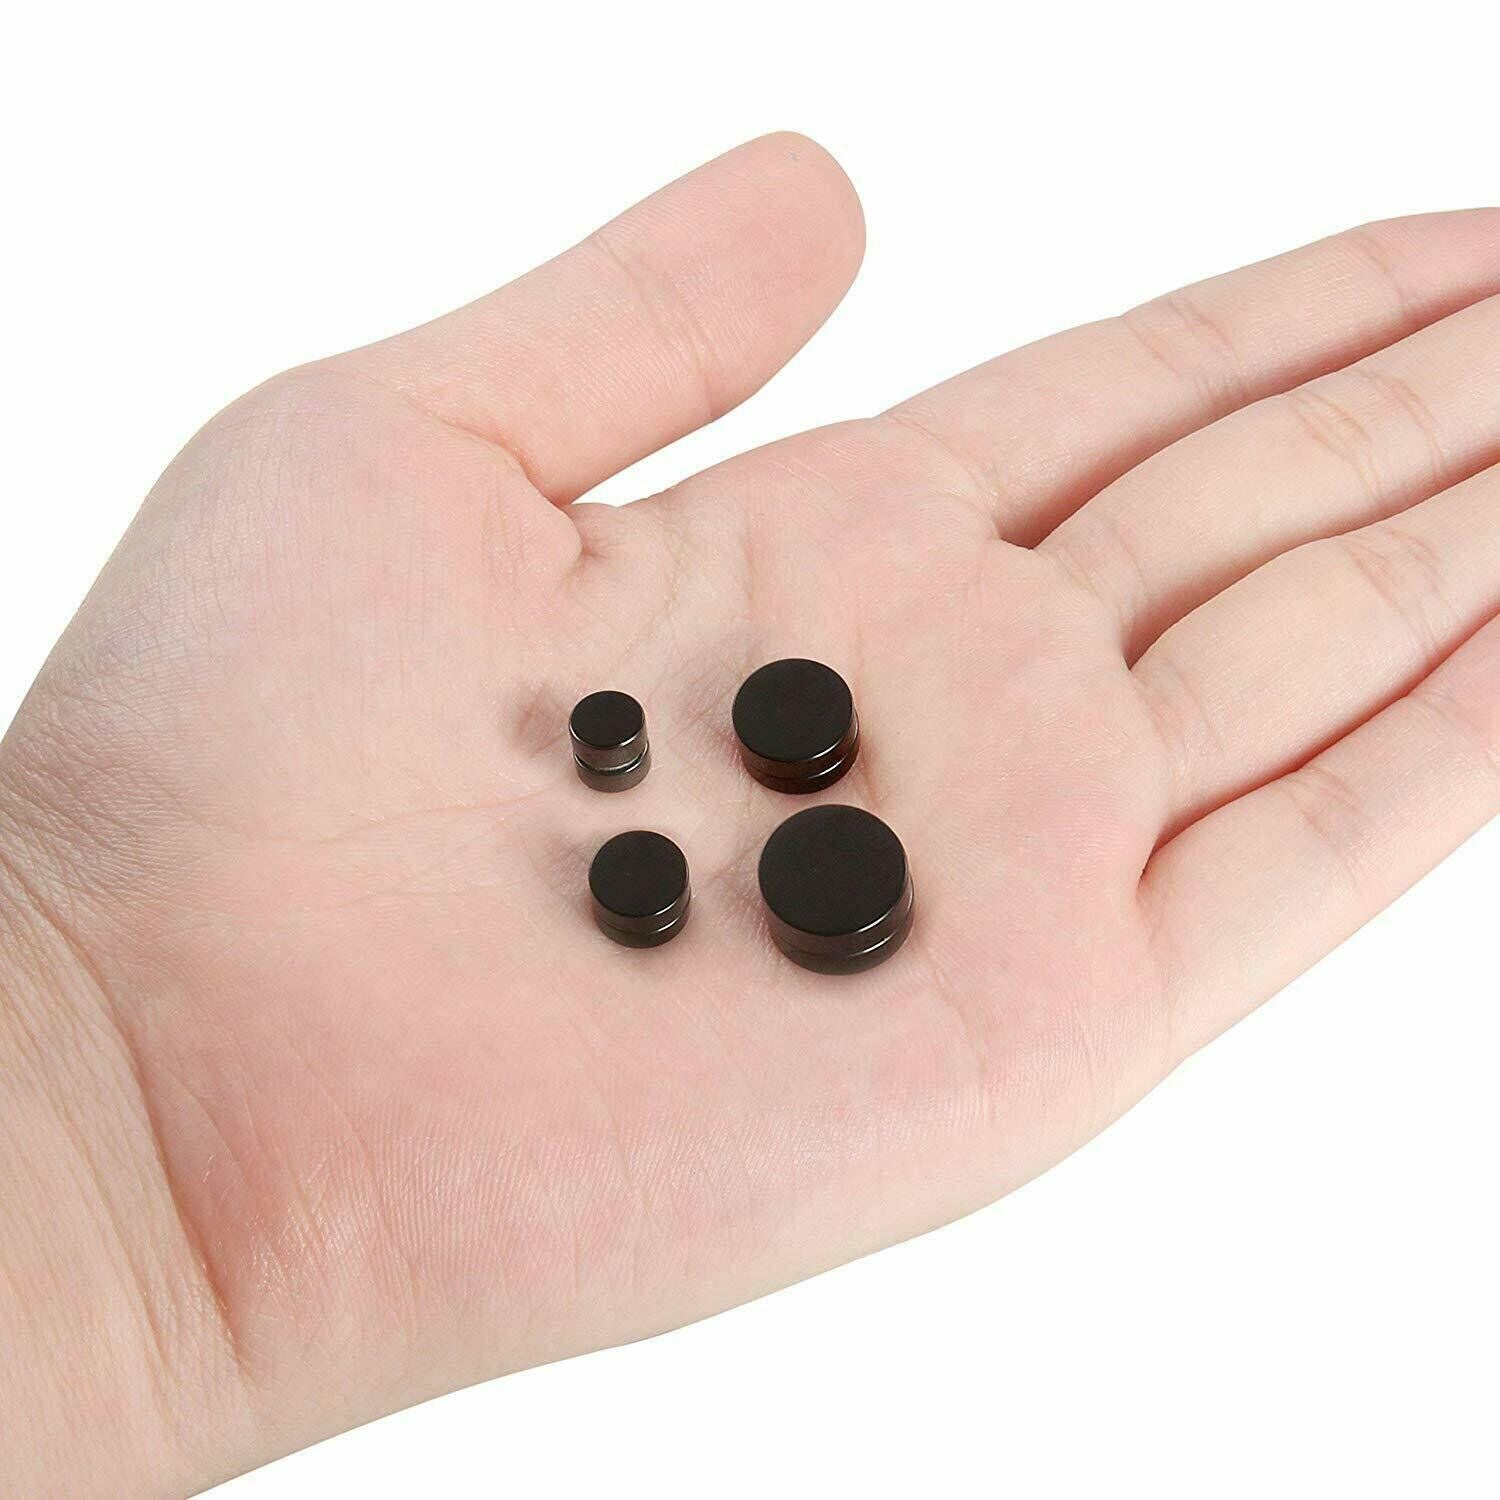 Stainless steel magnetic earrings, color: black, 10mm, 1 pair